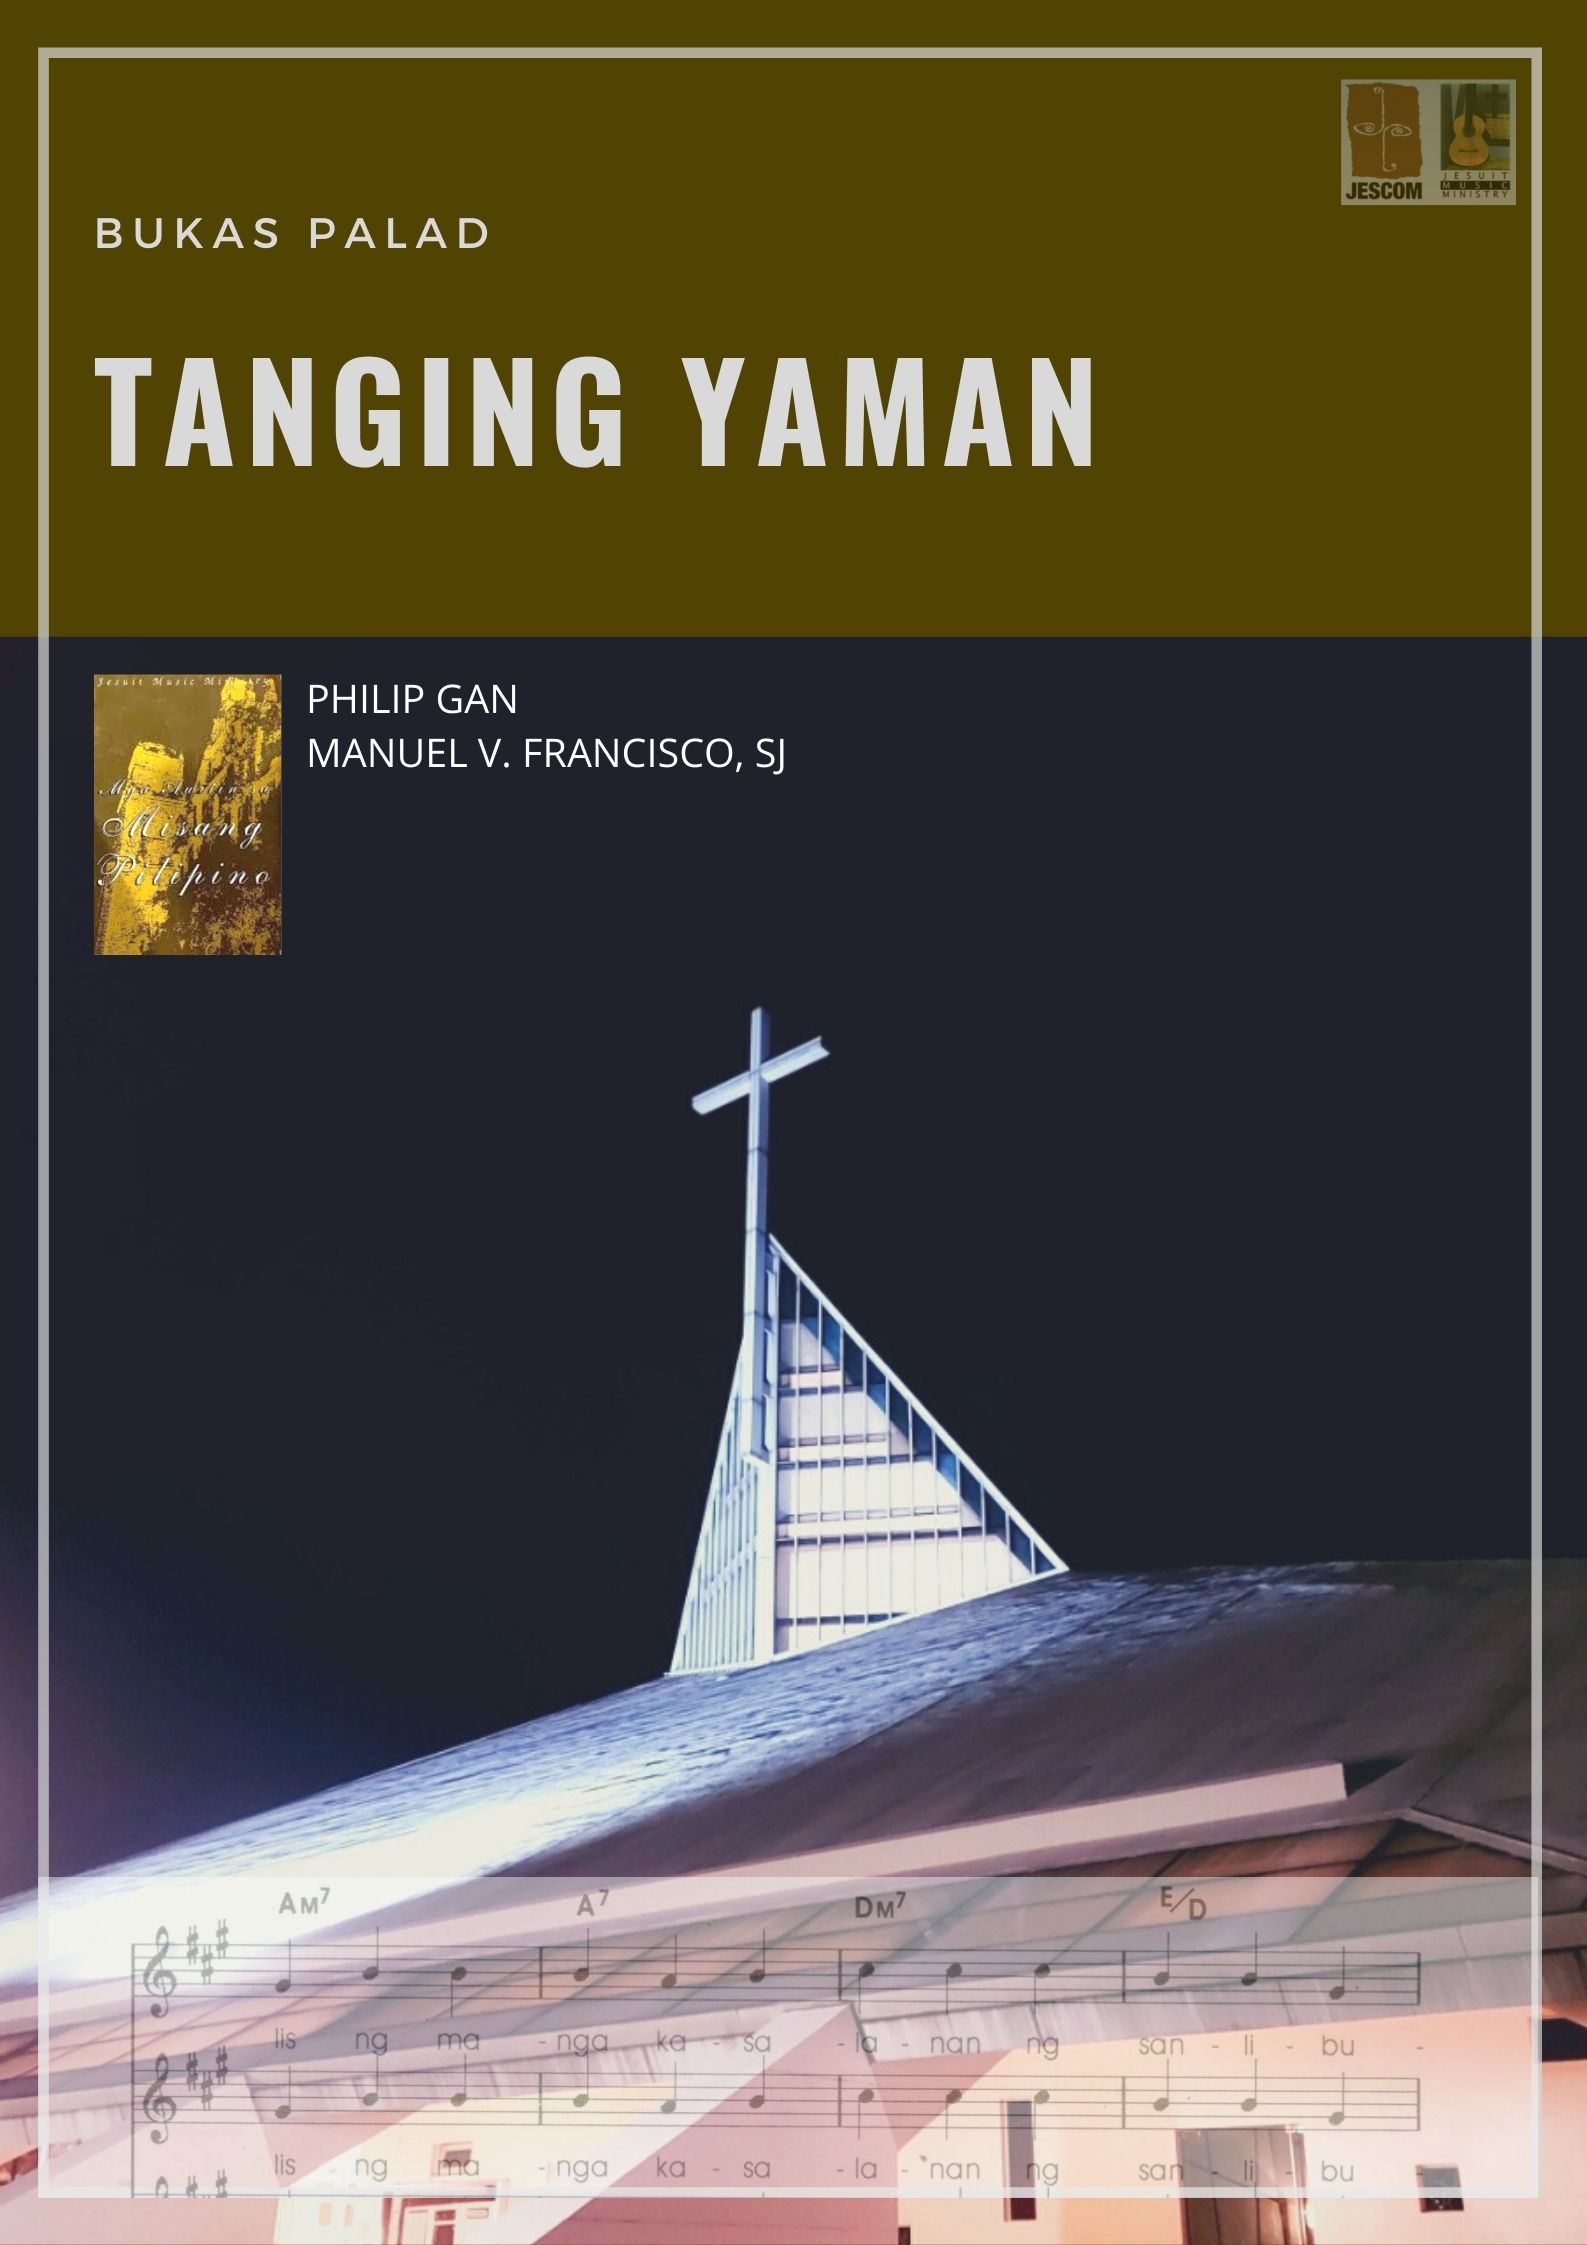 Tanging Yaman – Music Sheet